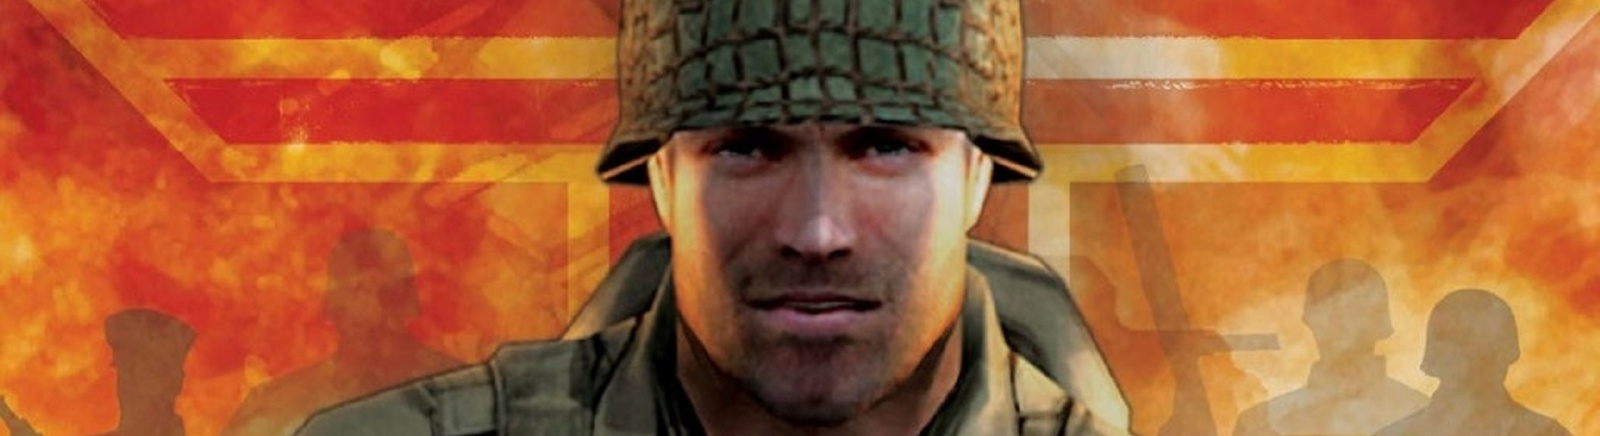 Дата выхода Return to Castle Wolfenstein: Tides of War  на Xbox в России и во всем мире